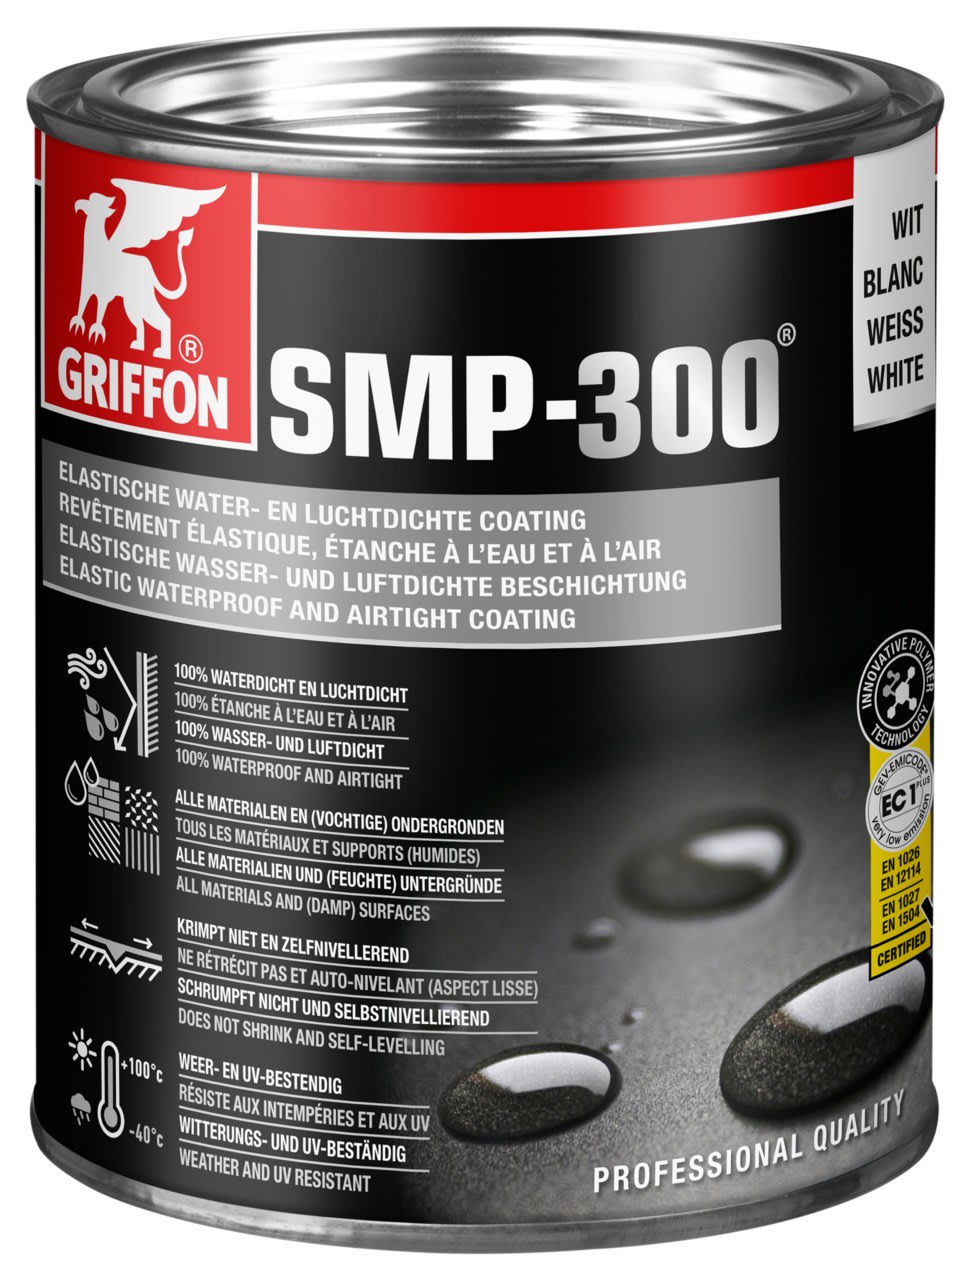 Griffon - SMP-300 Blanc Enduit elastique etanche a l'eau et a l'air Pot 1 kg